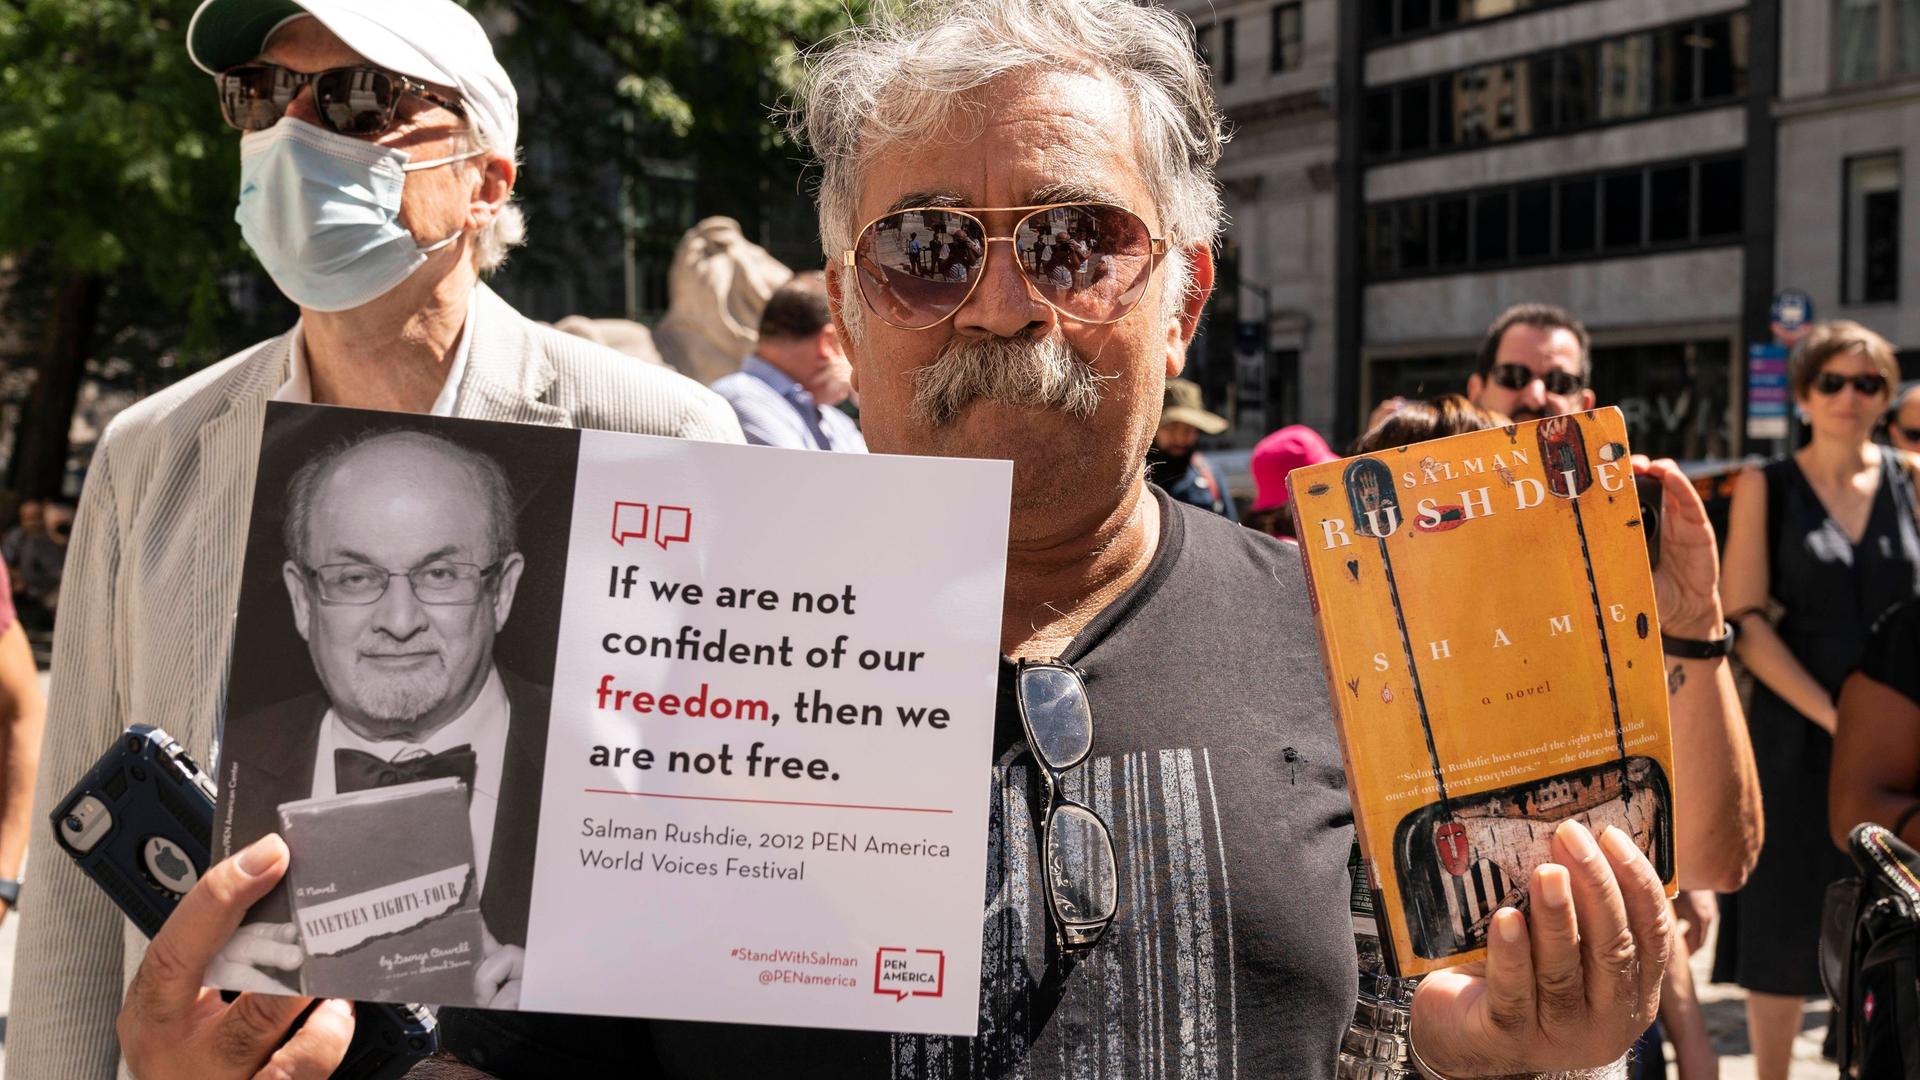 Ein Aktivist hält im August 2022 in New York während der PEN America-Kundgebung zur Unterstützung von Salman Rushdie ein Plakat mit einem Bild von Salman Rushdie und dem Zitat "If we are not confident of our freedom, then we are not free." sowie ein Buch von Rushdie.